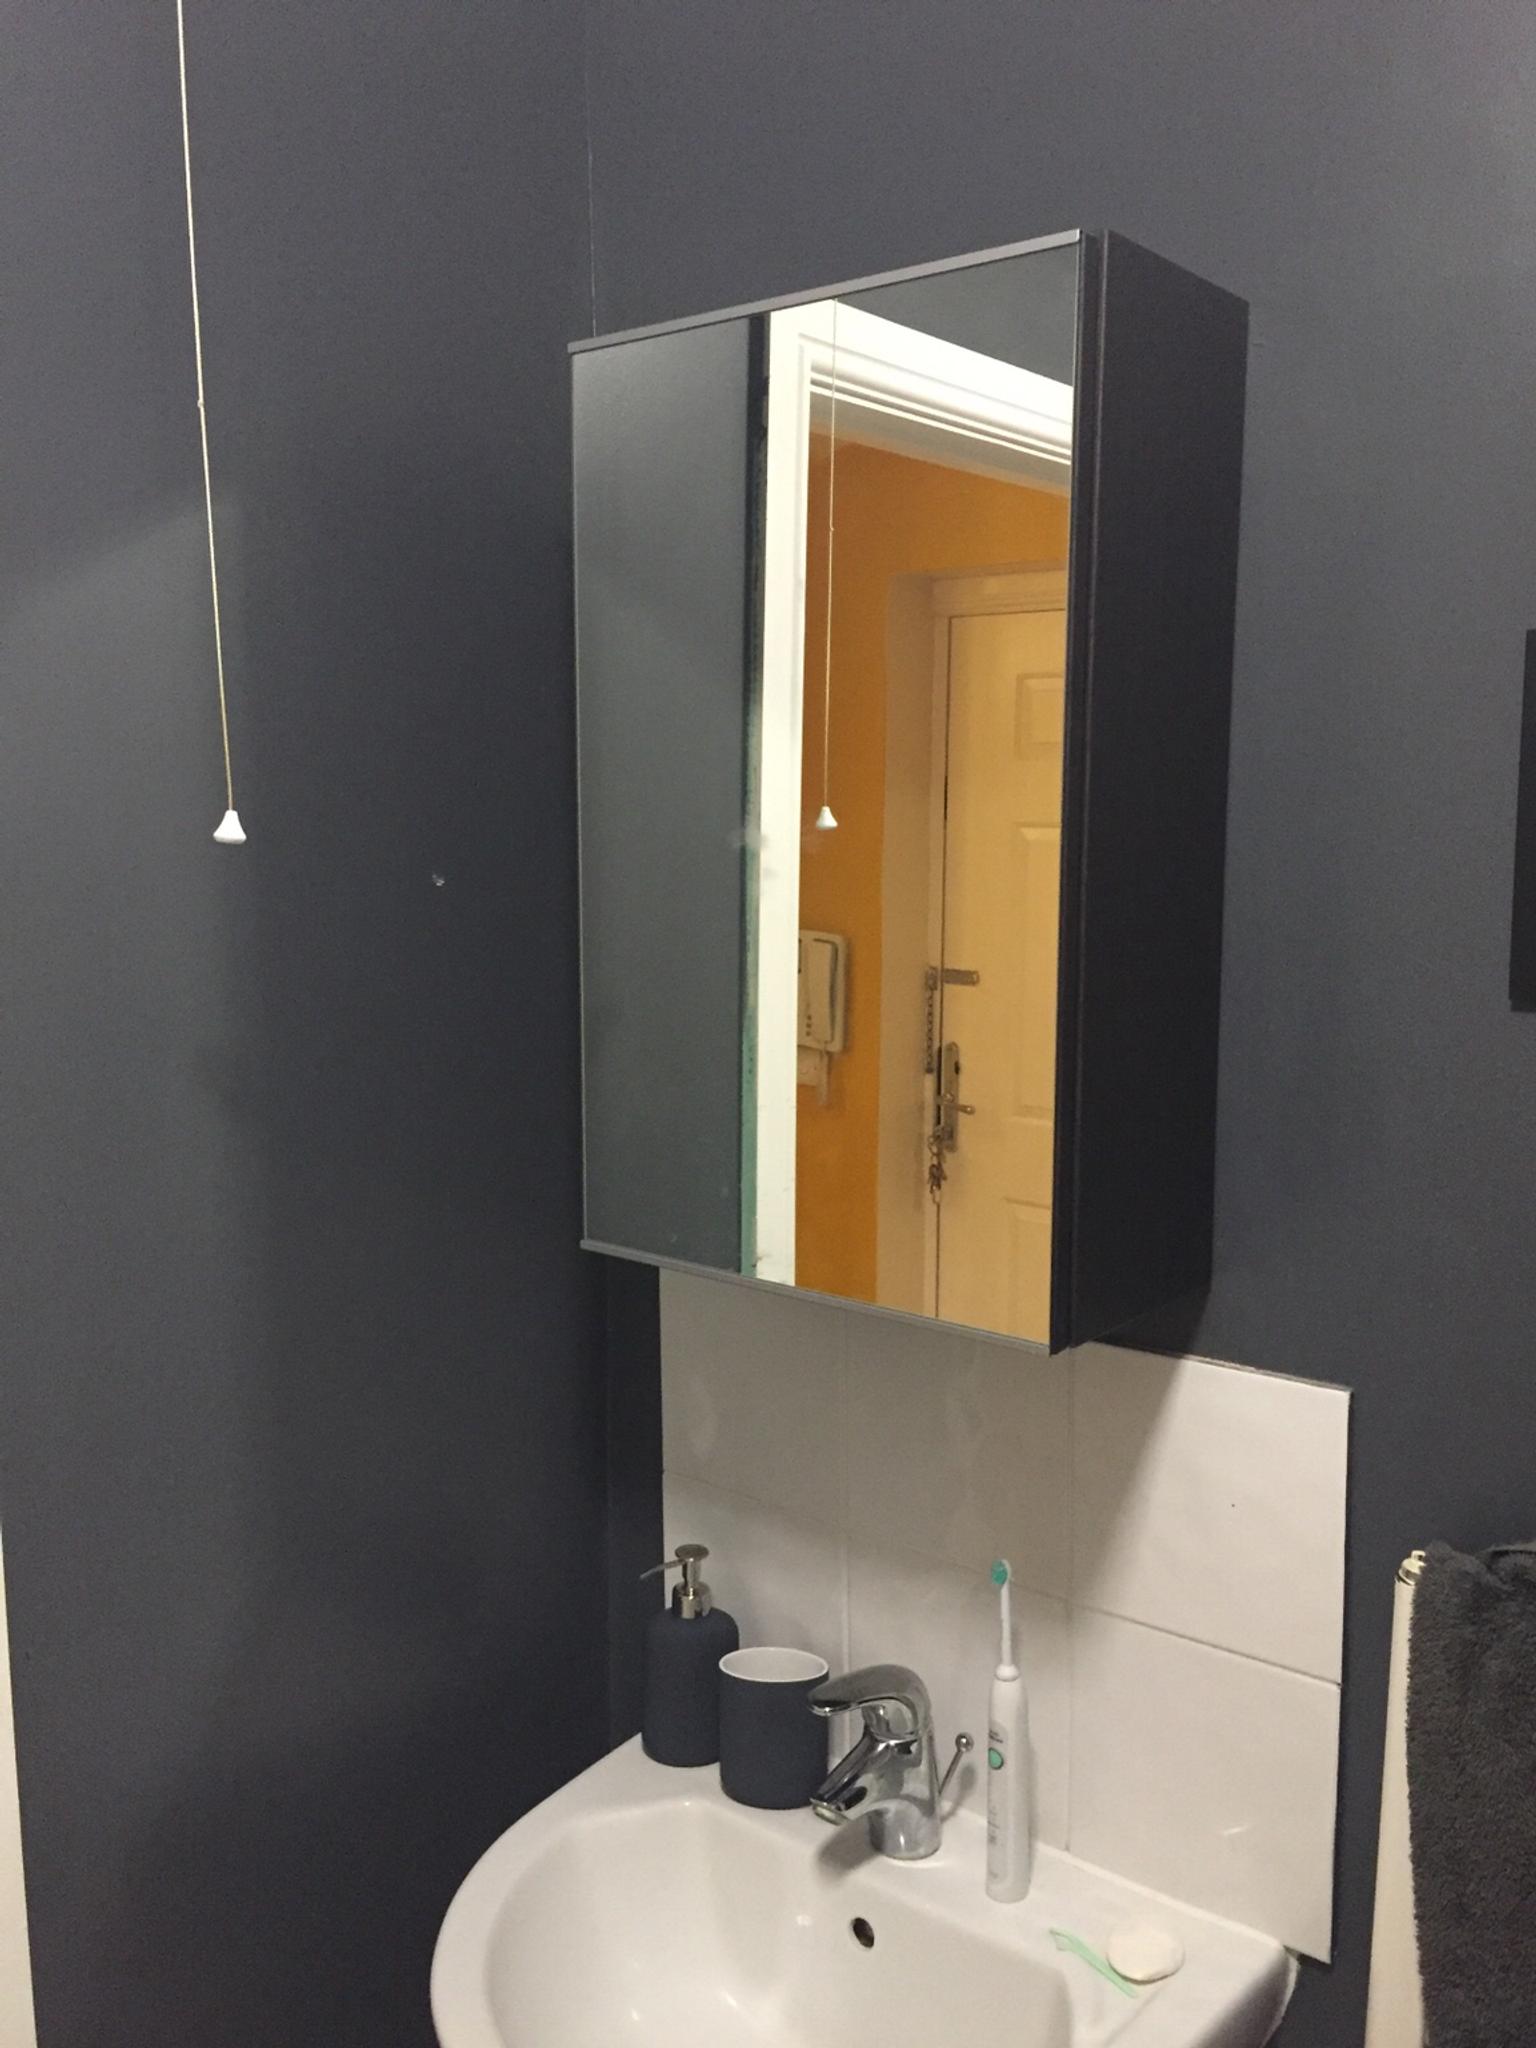 Ikea Lillangen Mirror Bathroom Cabinet In Cr0 London Fur 10 00